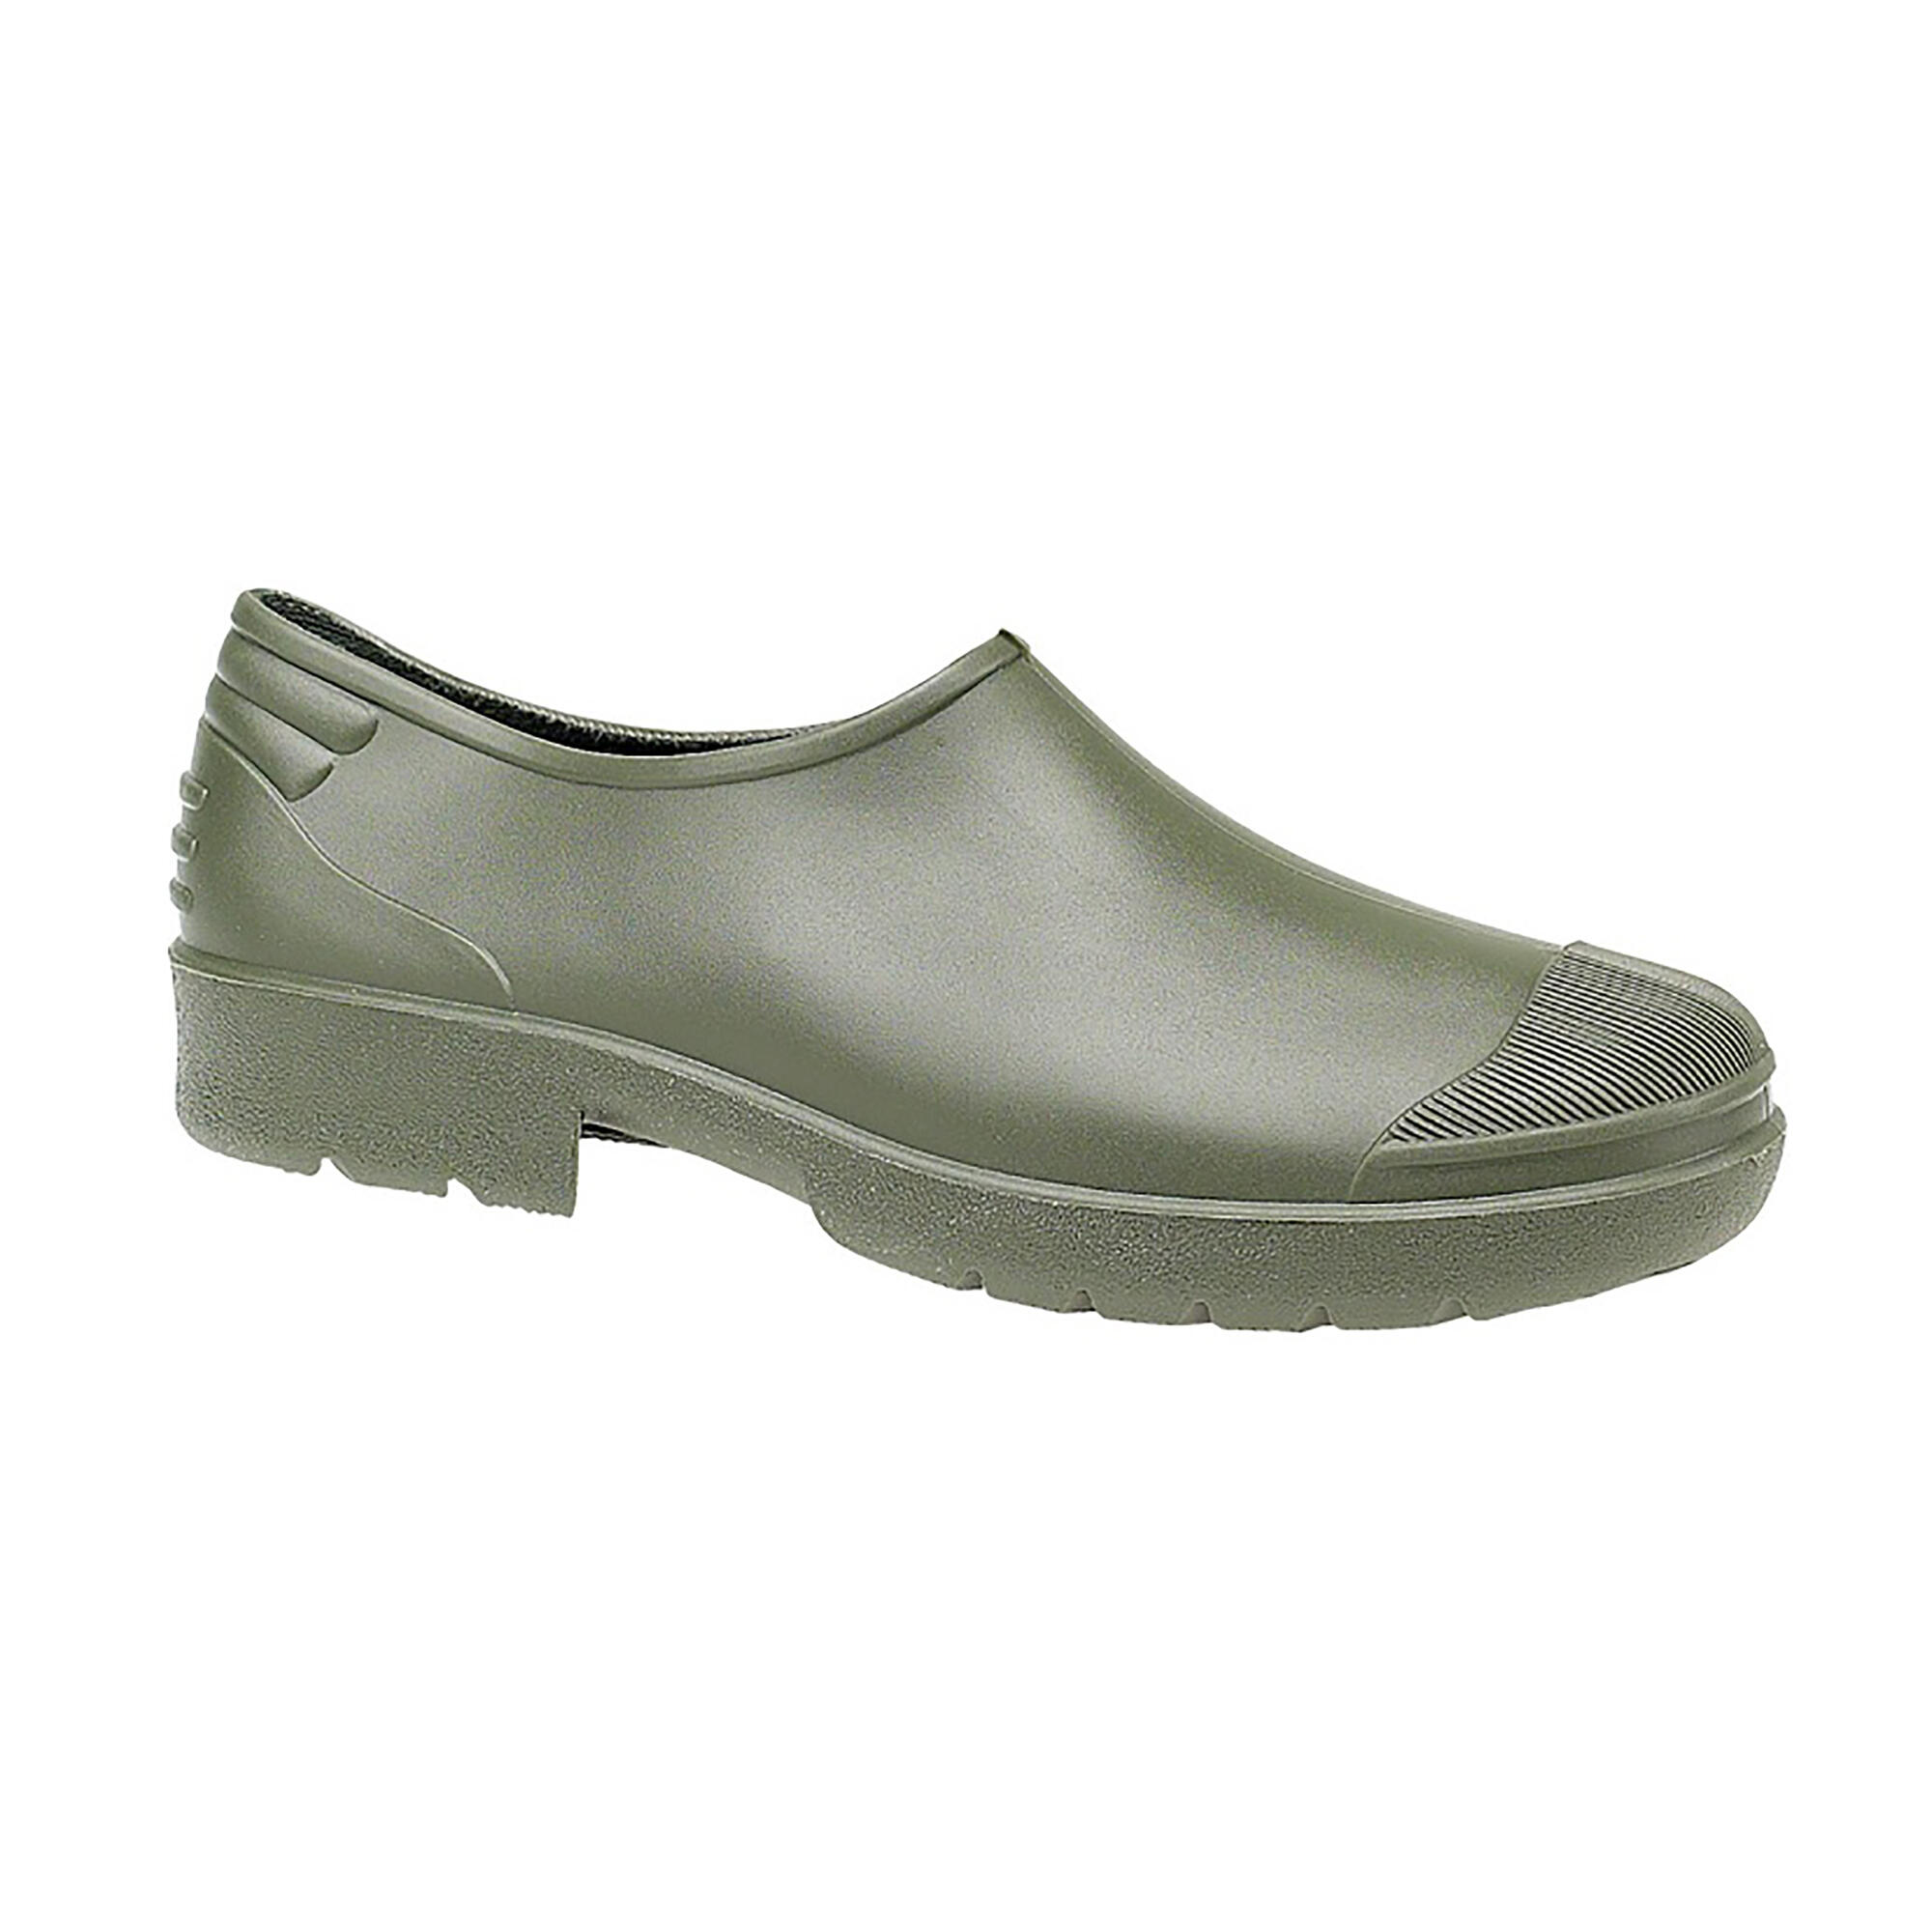 DIKAMAR Primera Gardening Shoe / Womens Shoes / Garden Shoes (Green)